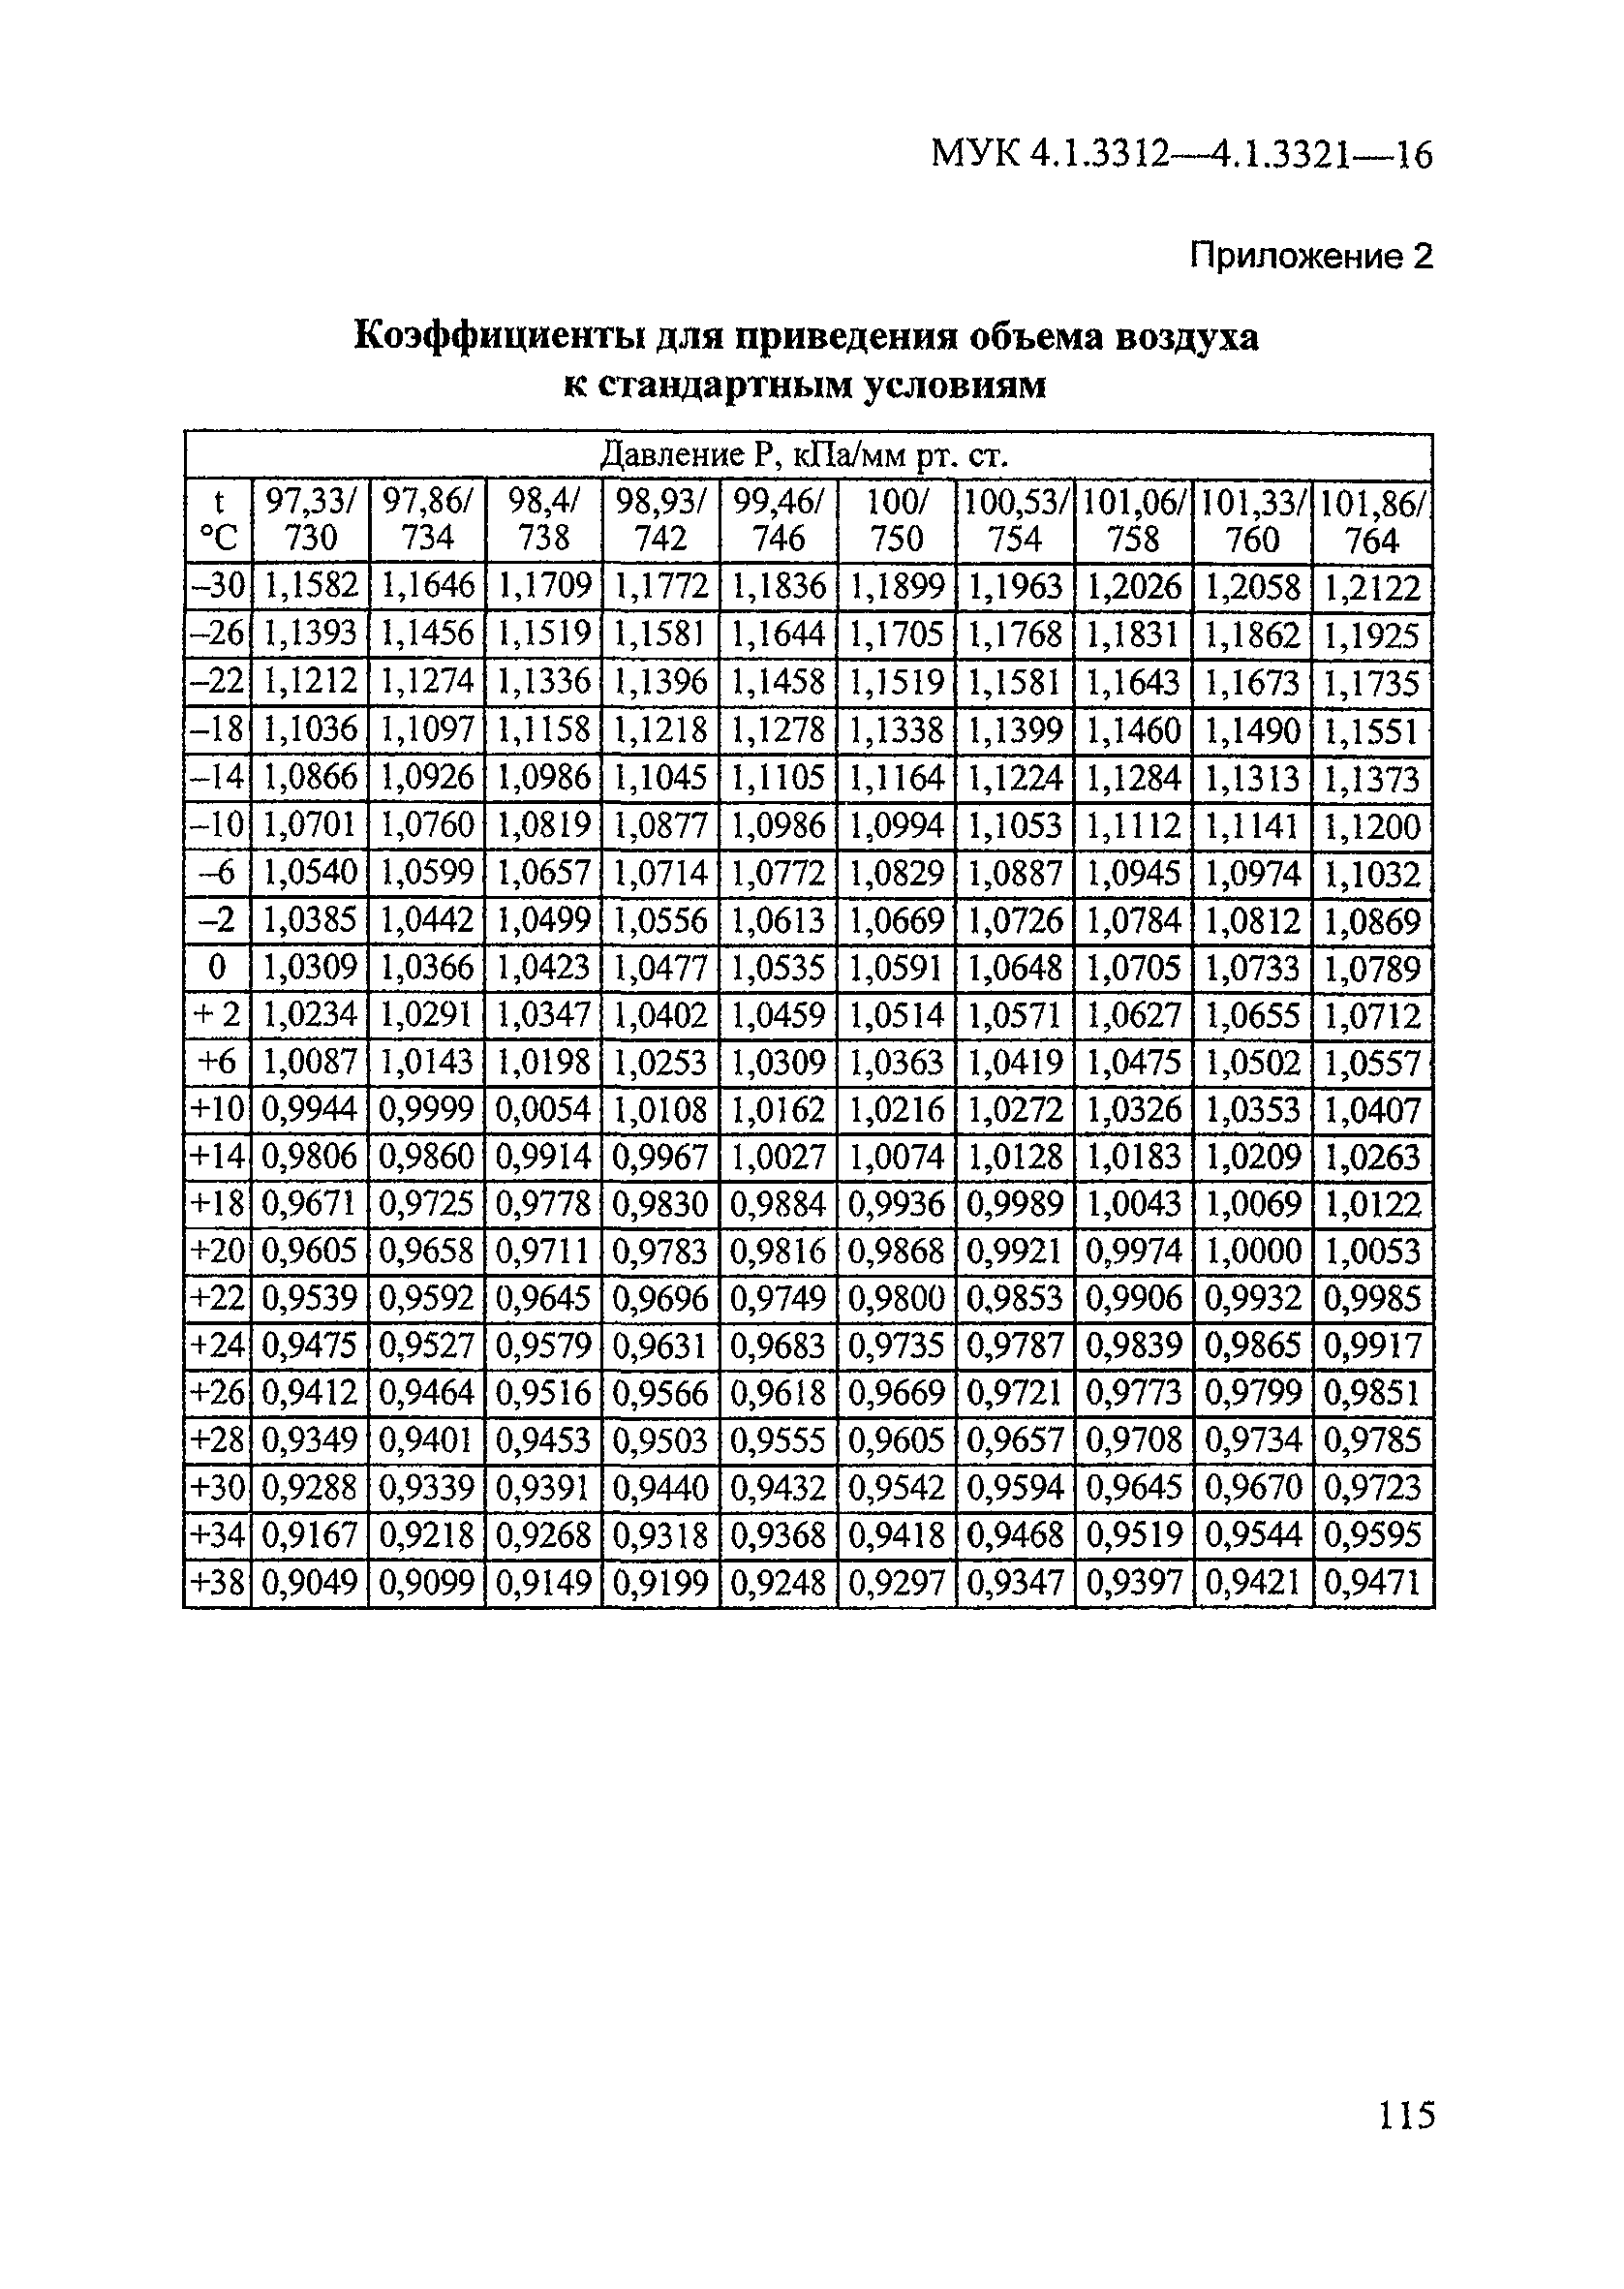 МУК 4.1.3320-15